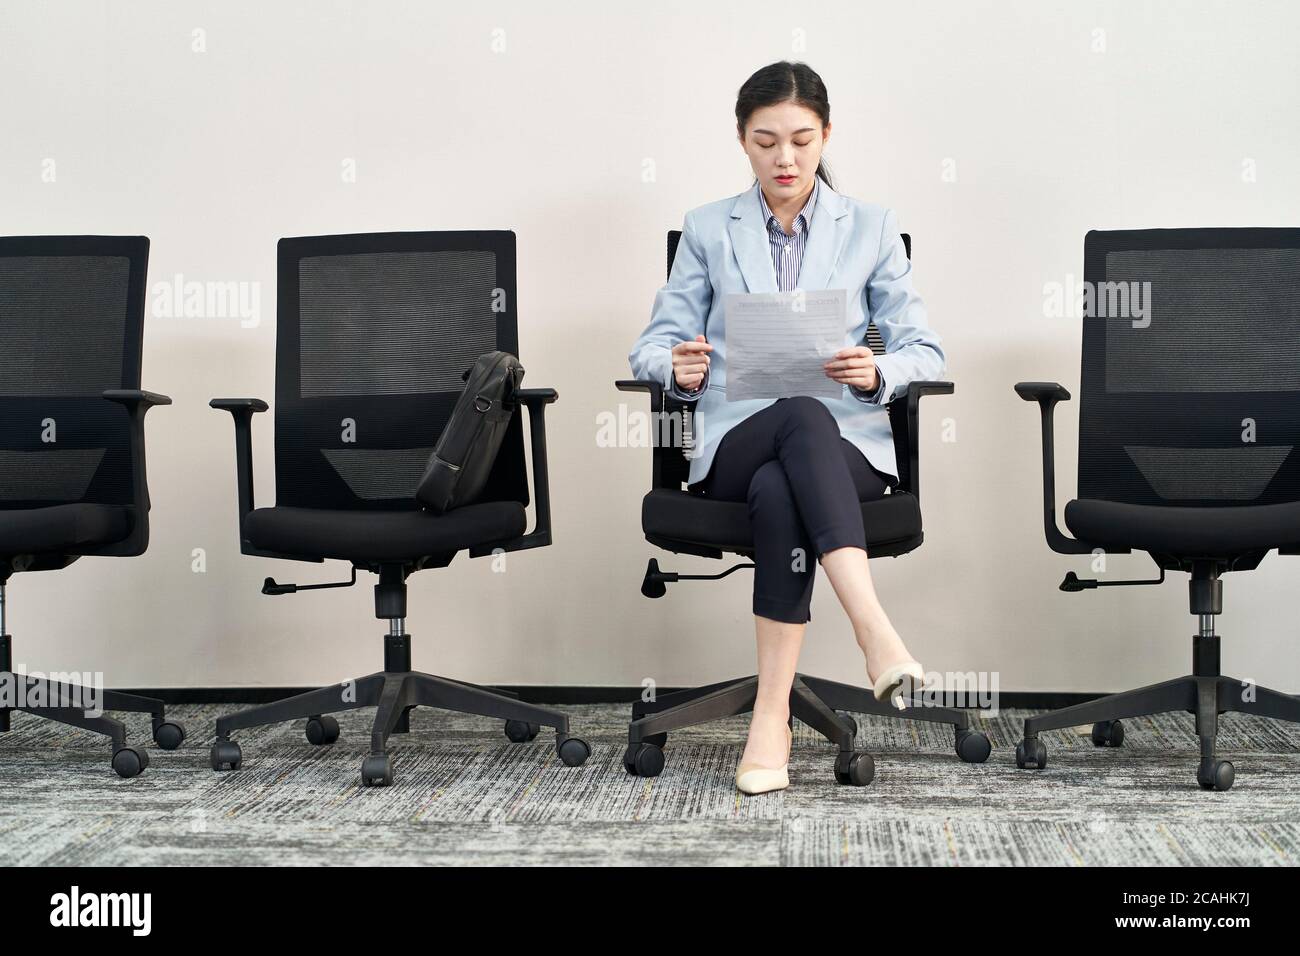 Junge asiatische weibliche Arbeitssuchende sitzen im Stuhl Vorbereitung für Interview während in der Schlange warten Stockfoto